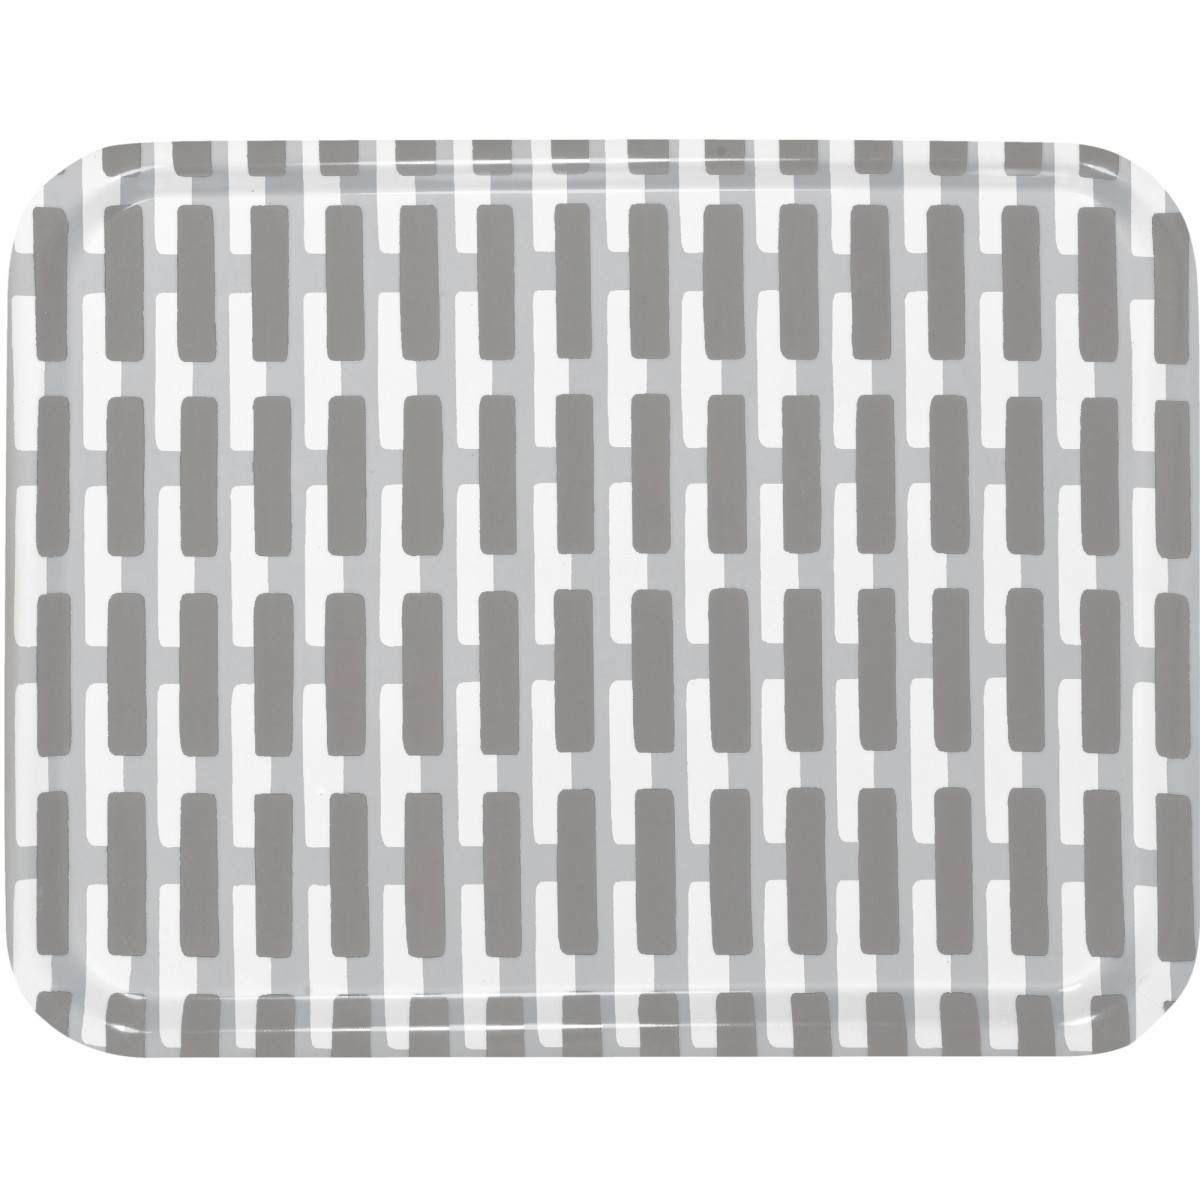 43x33cm - Siena tray, grey / light grey shadow